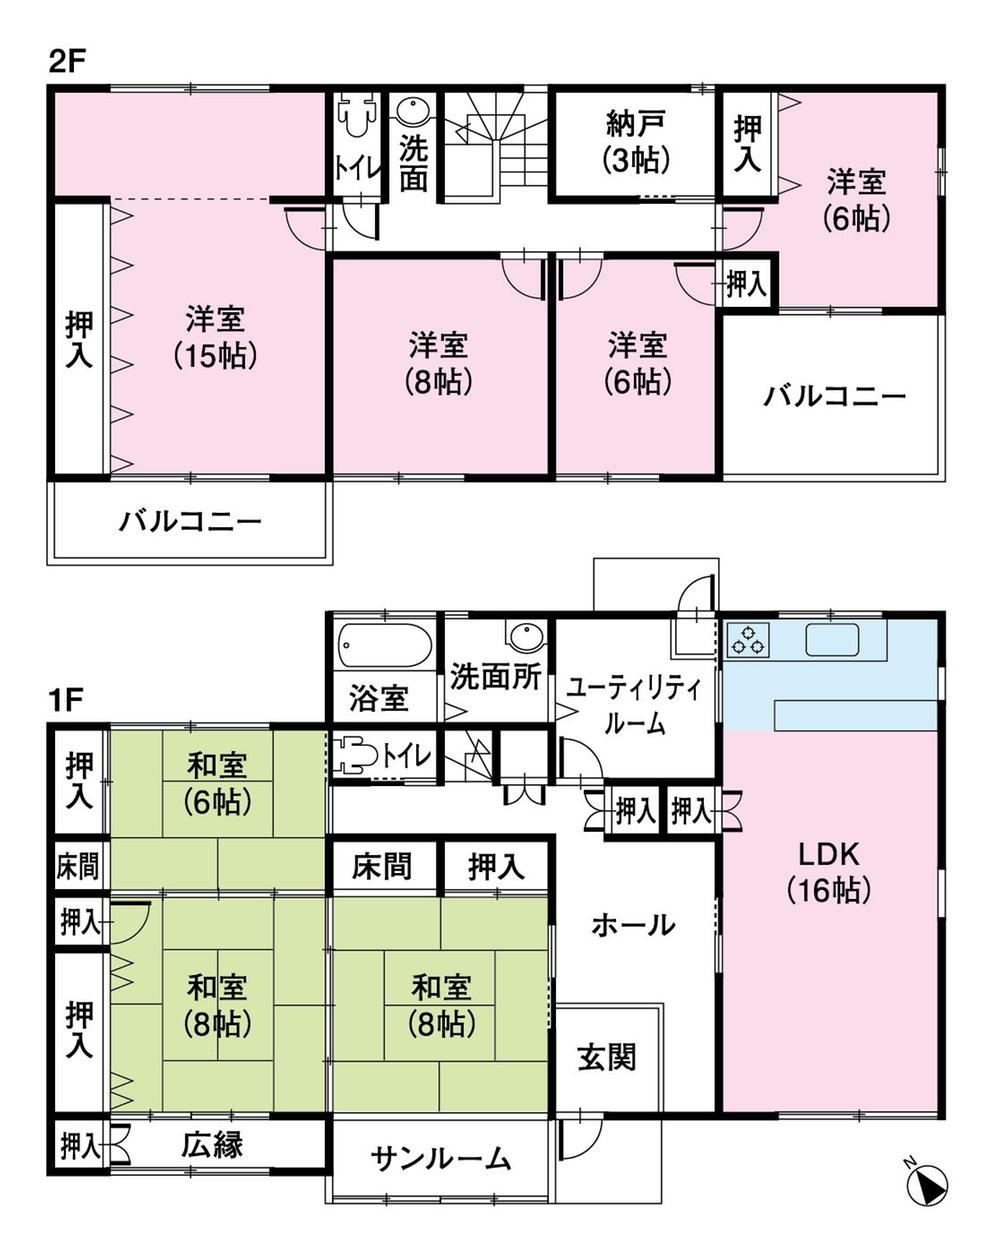 Floor plan. 33,880,000 yen, 7LDK + 2S (storeroom), Land area 462.01 sq m , Building area 222.42 sq m